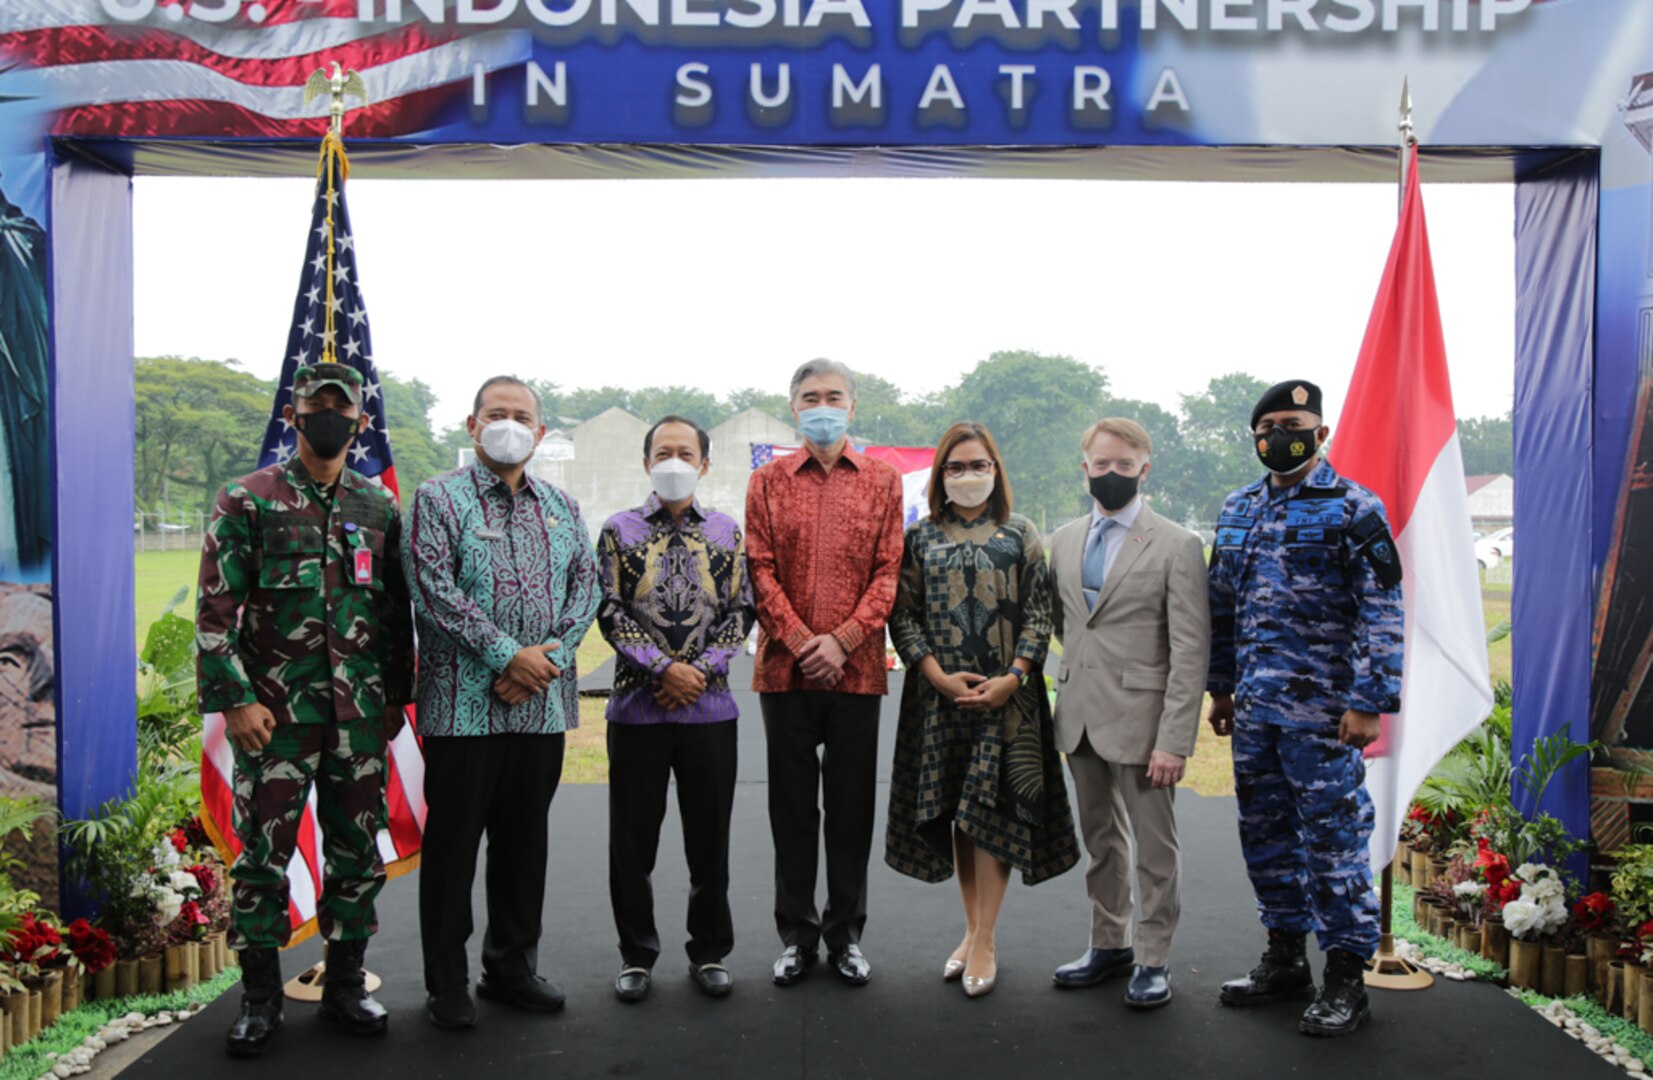 U.S. - Indonesian Partnership in Sumatra